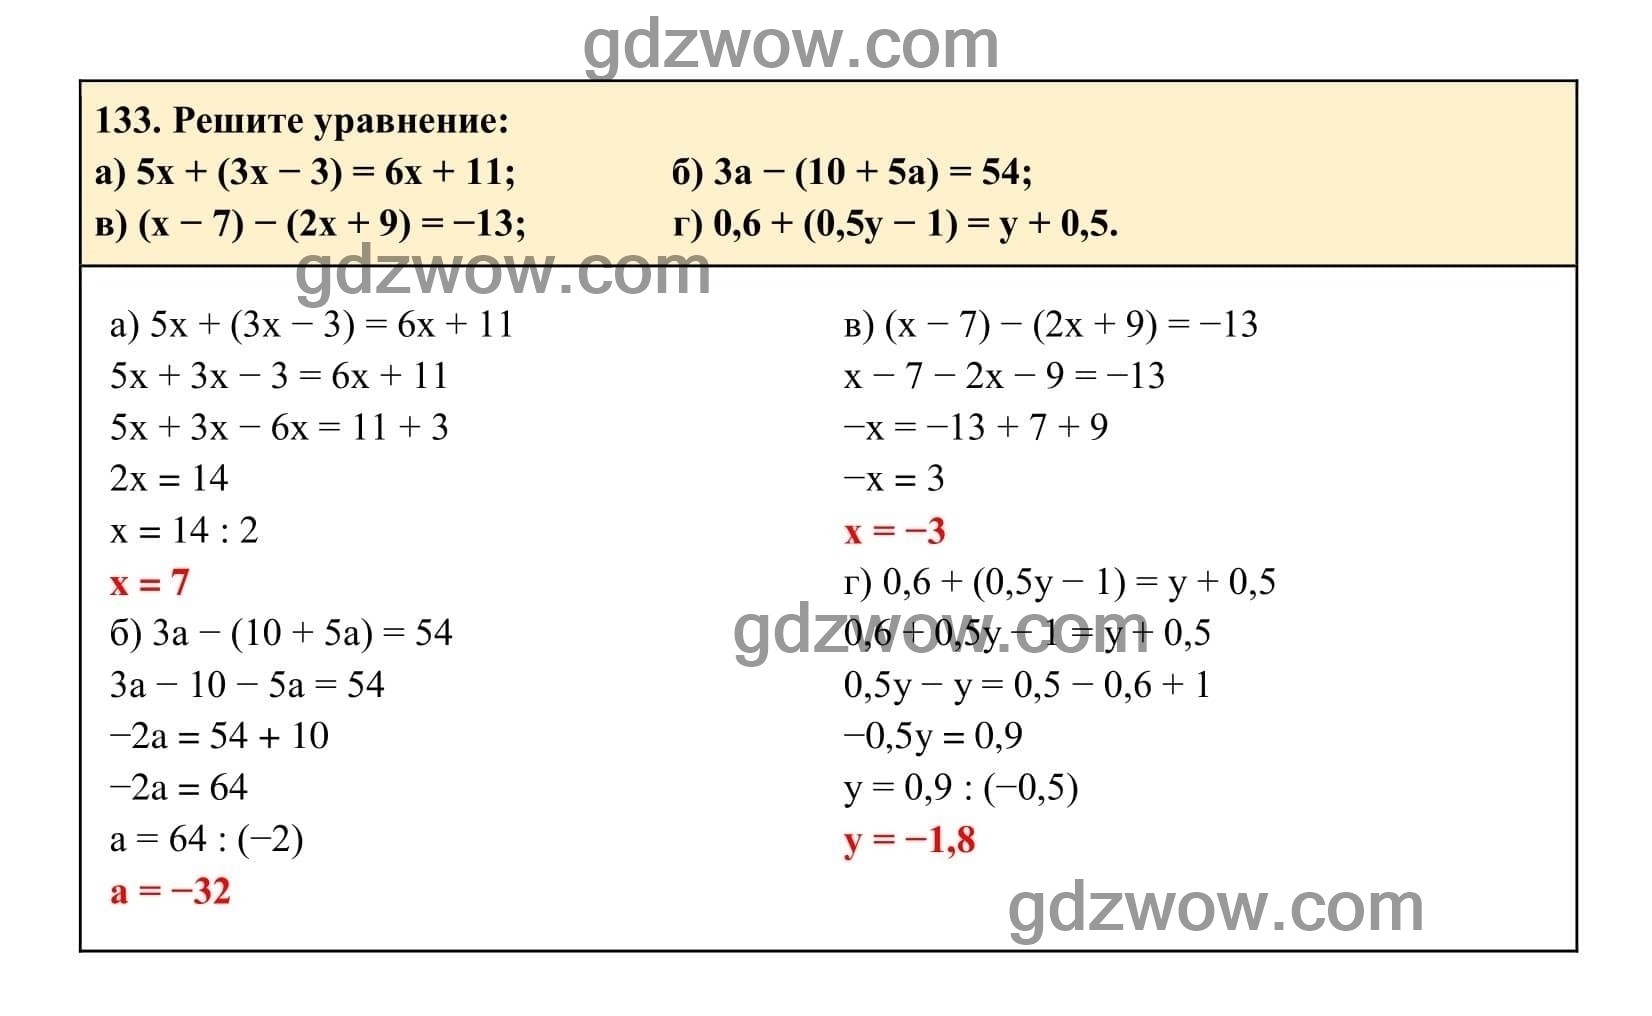 Упражнение 133 - ГДЗ по Алгебре 7 класс Учебник Макарычев (решебник) - GDZwow